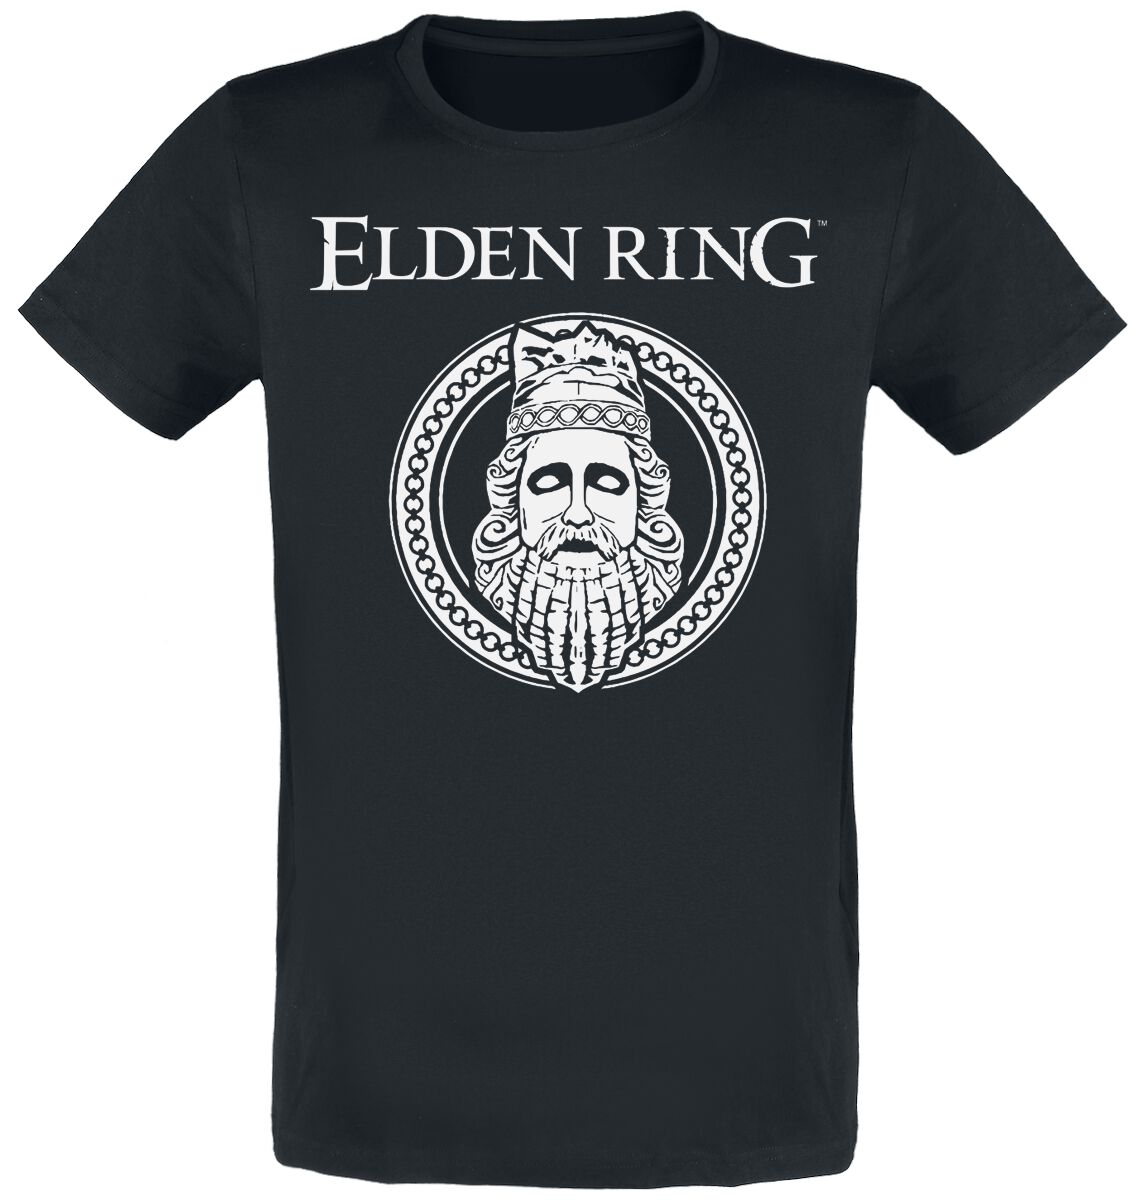 Elden Ring - Gaming T-Shirt - King - S bis XXL - für Männer - Größe L - schwarz